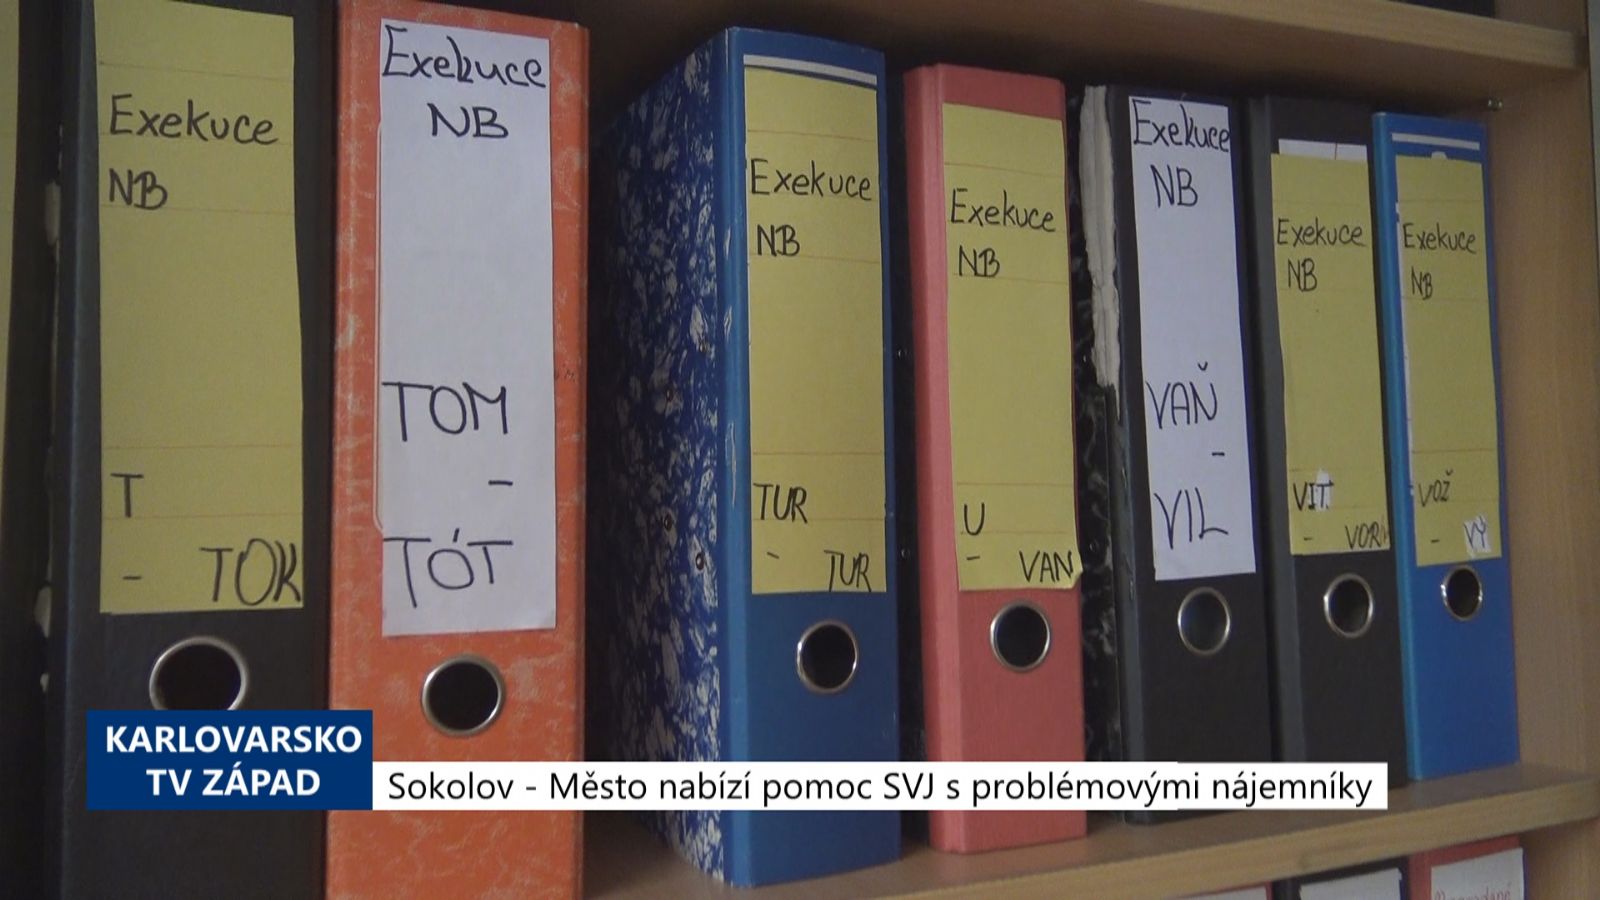 Sokolov: Město nabízí pomoc SVJ s problémovými nájemníky (TV Západ)